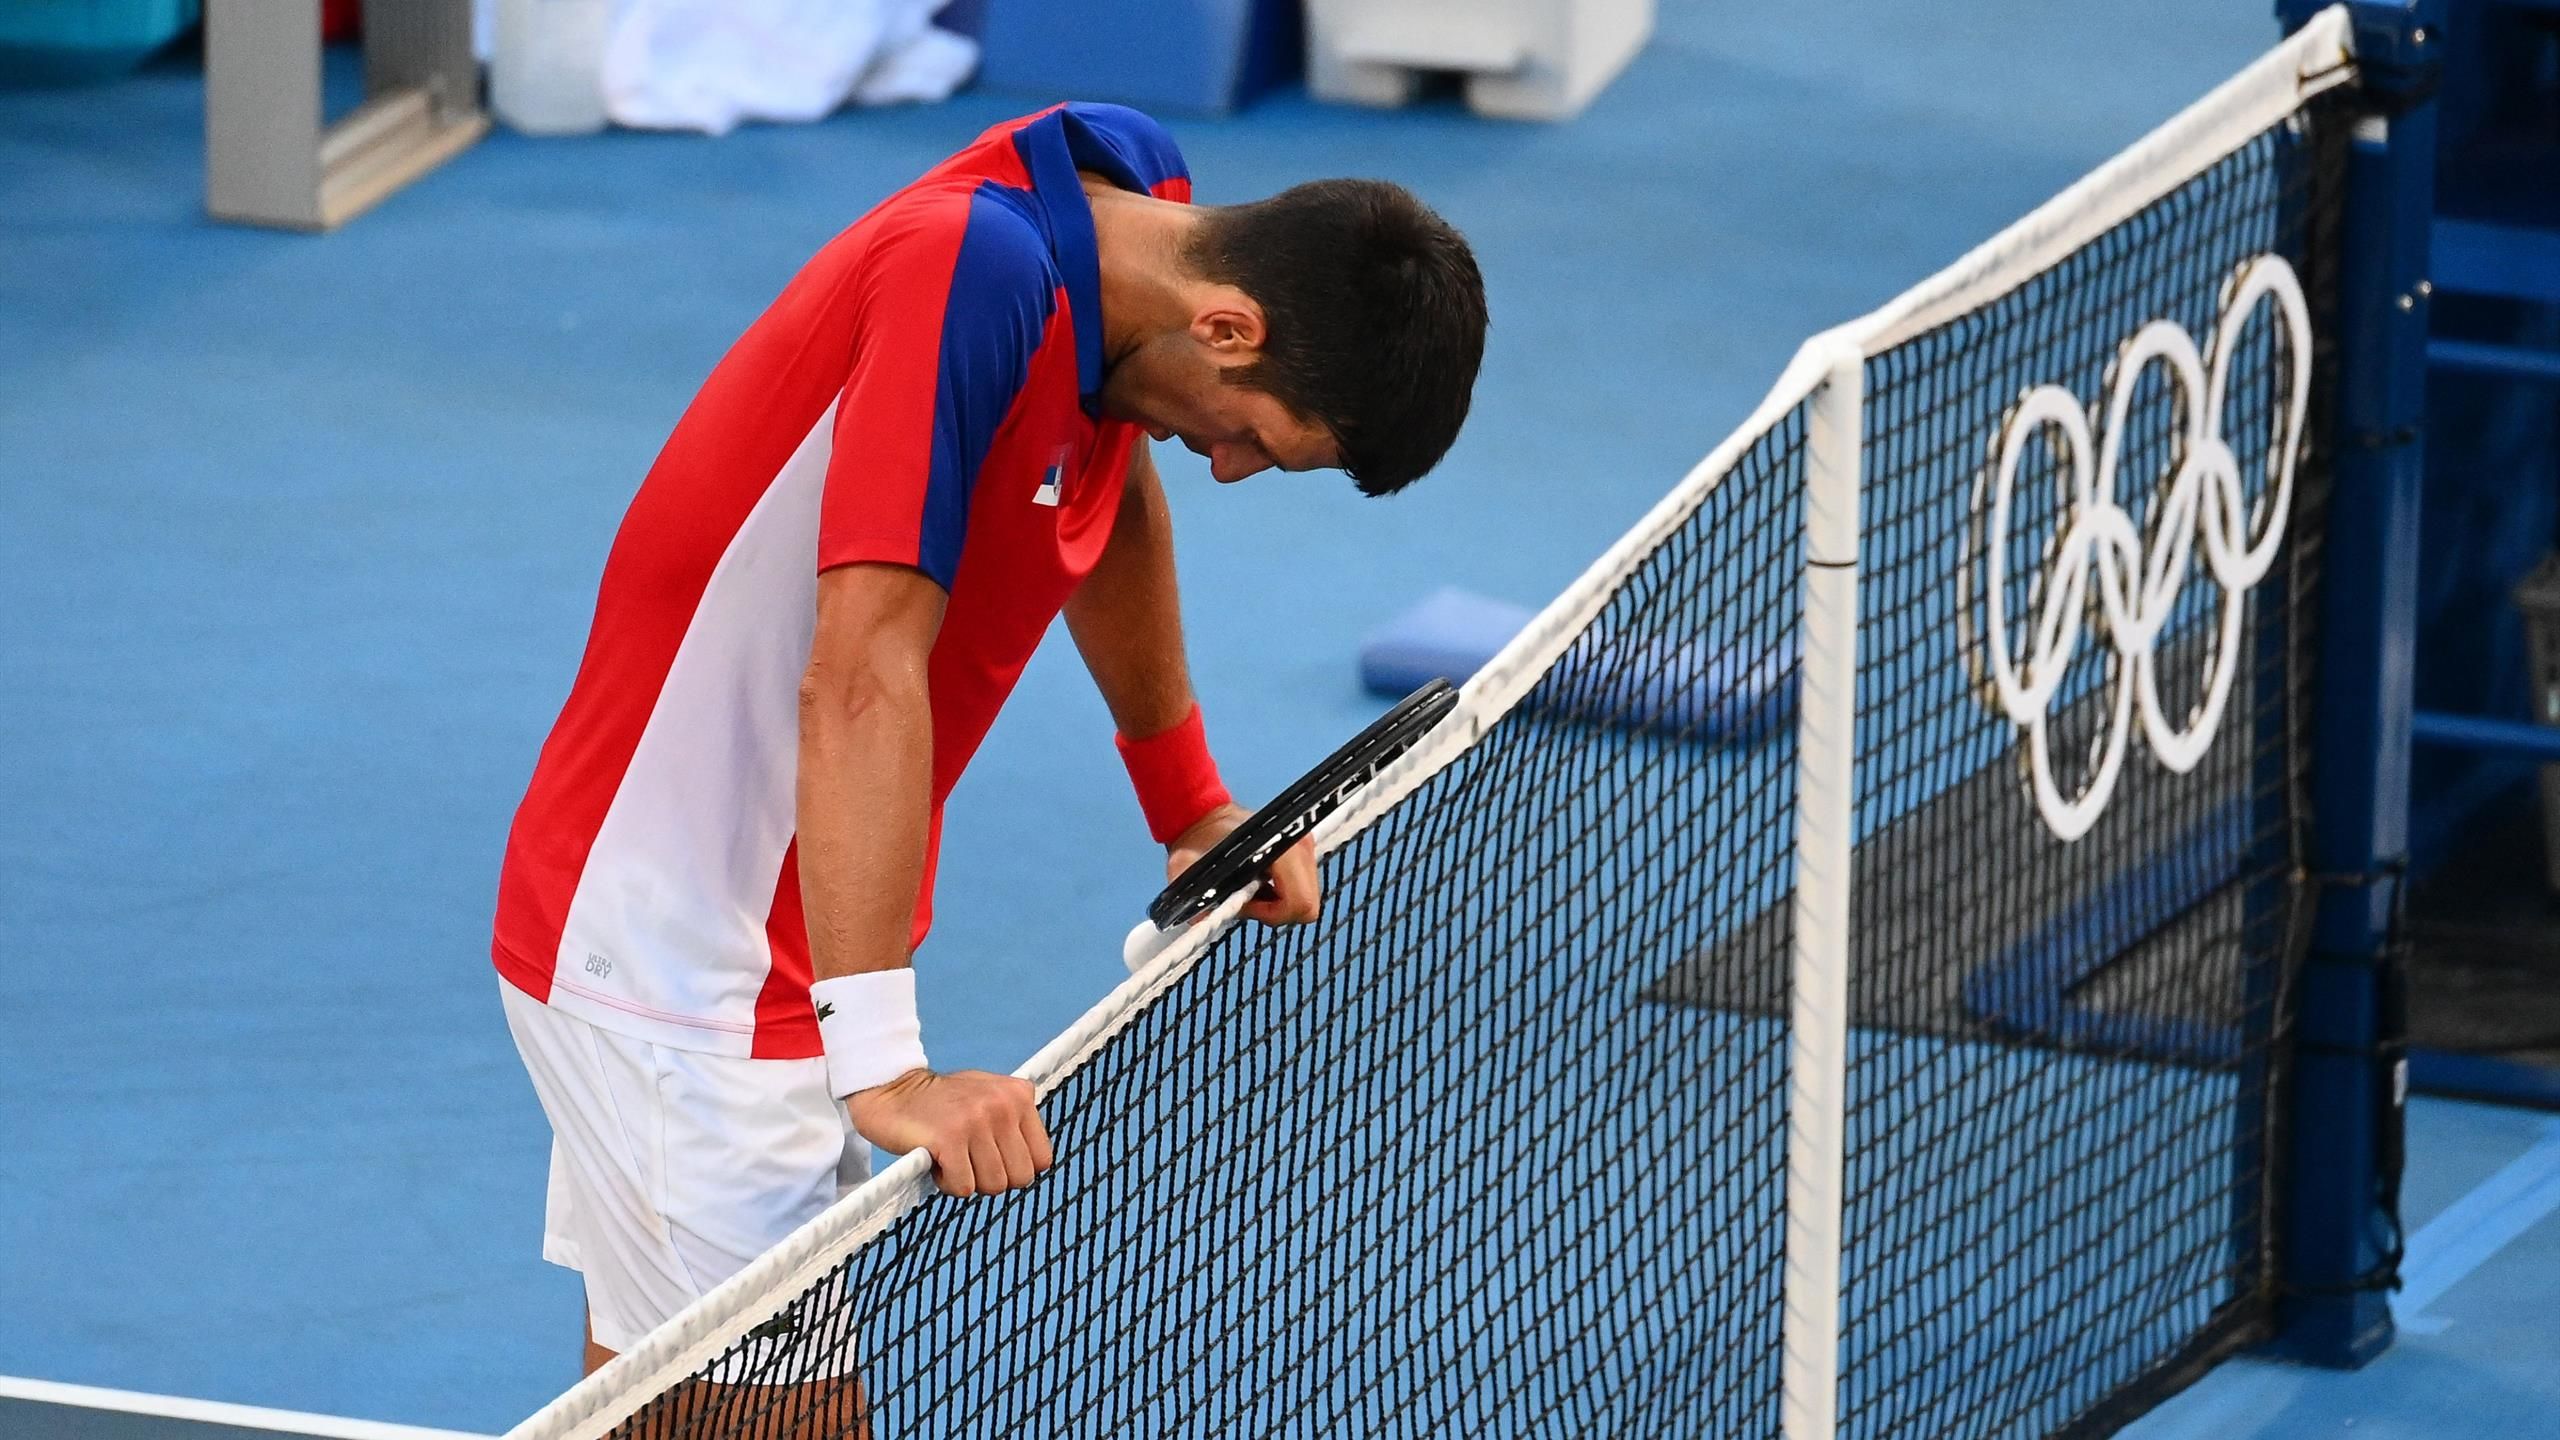 Villain Calamity Alienation Novak Djokovic, după finala mică de la Tokyo: "Mă lupt cu mai multe  accidentări" - Eurosport